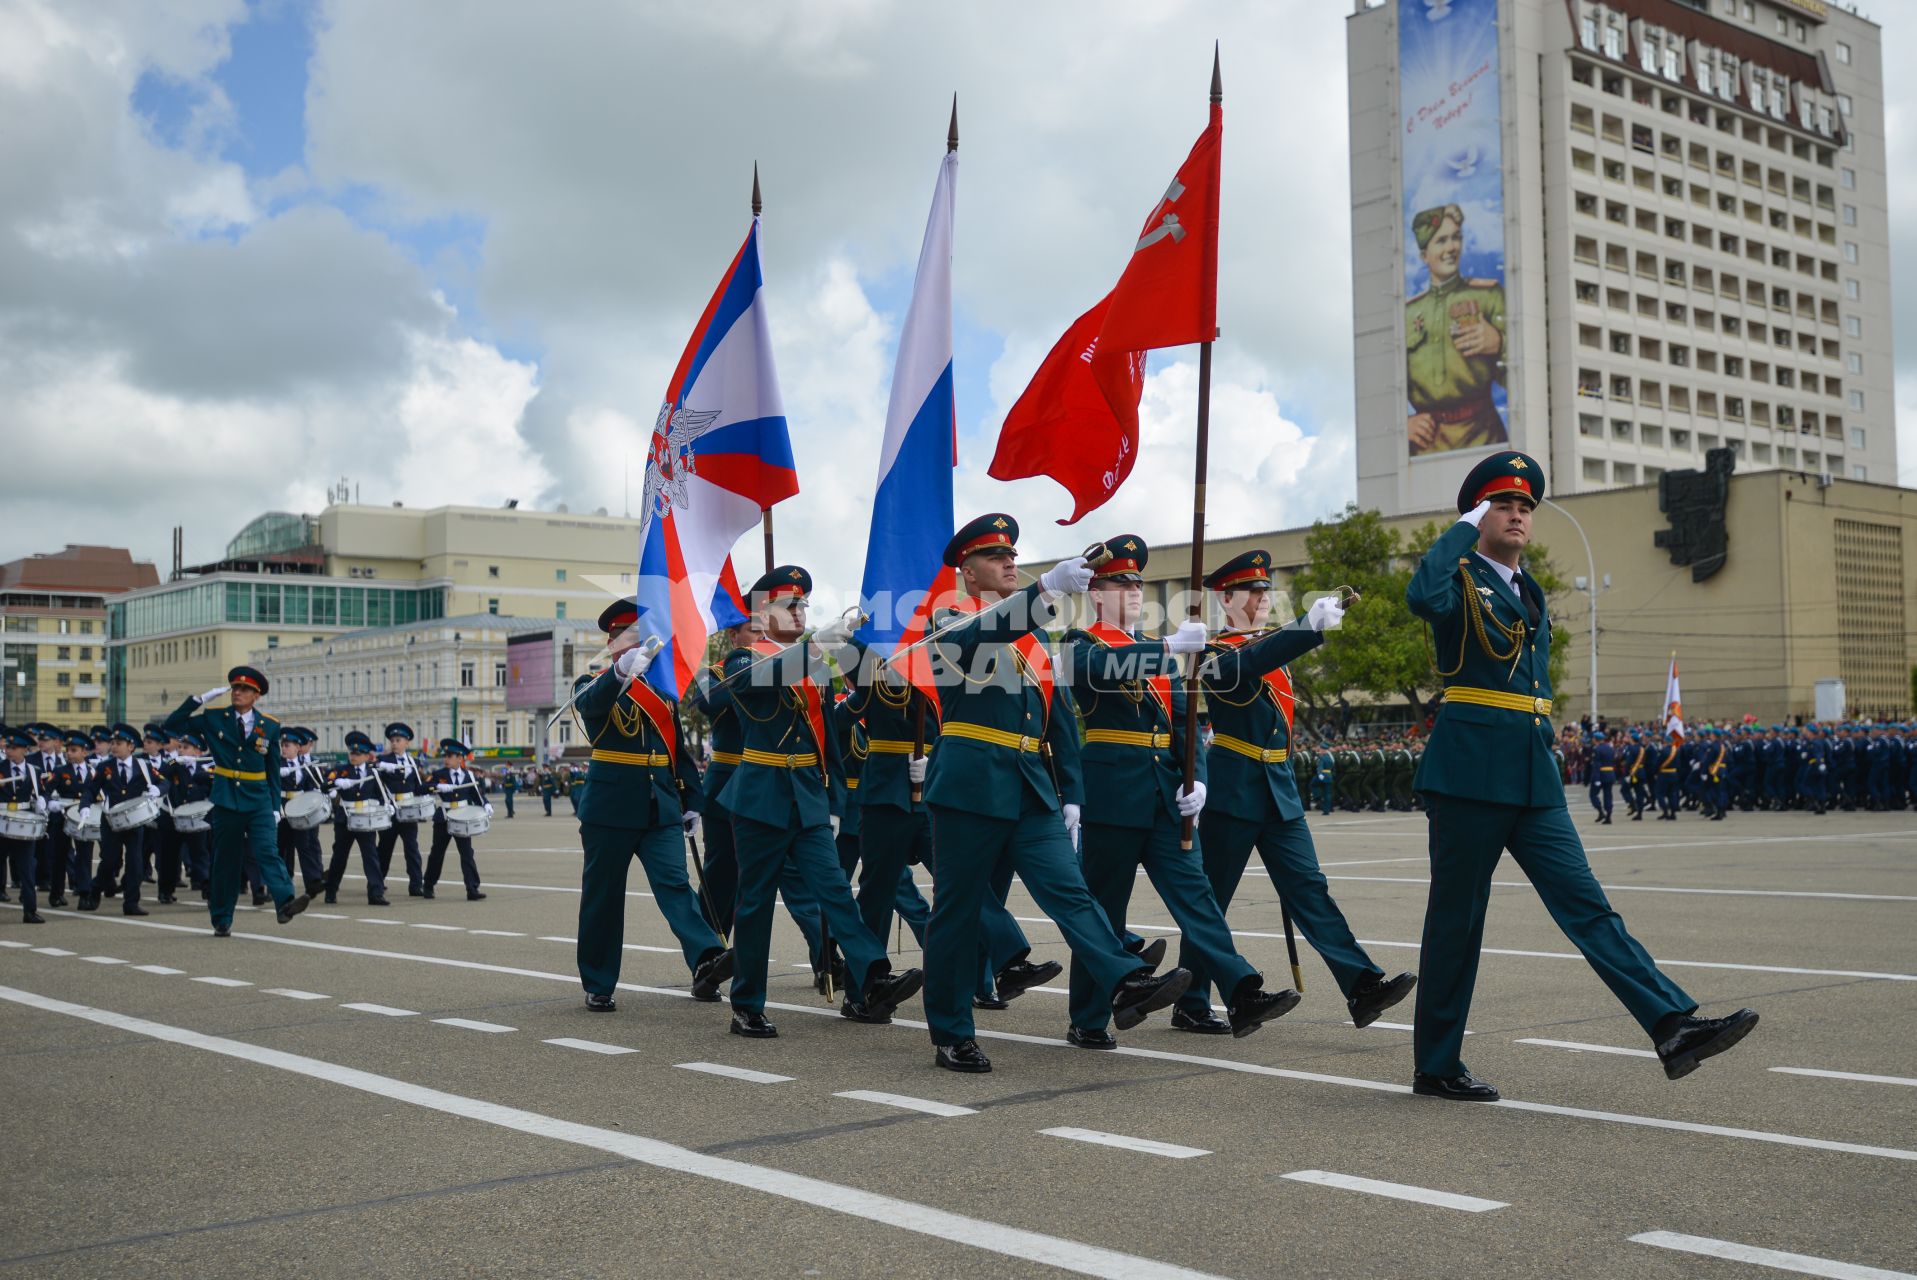 Ставрополь.   Военнослужащие во время военного парада, посвященного 71-й годовщине Победы в Великой Отечественной войне.